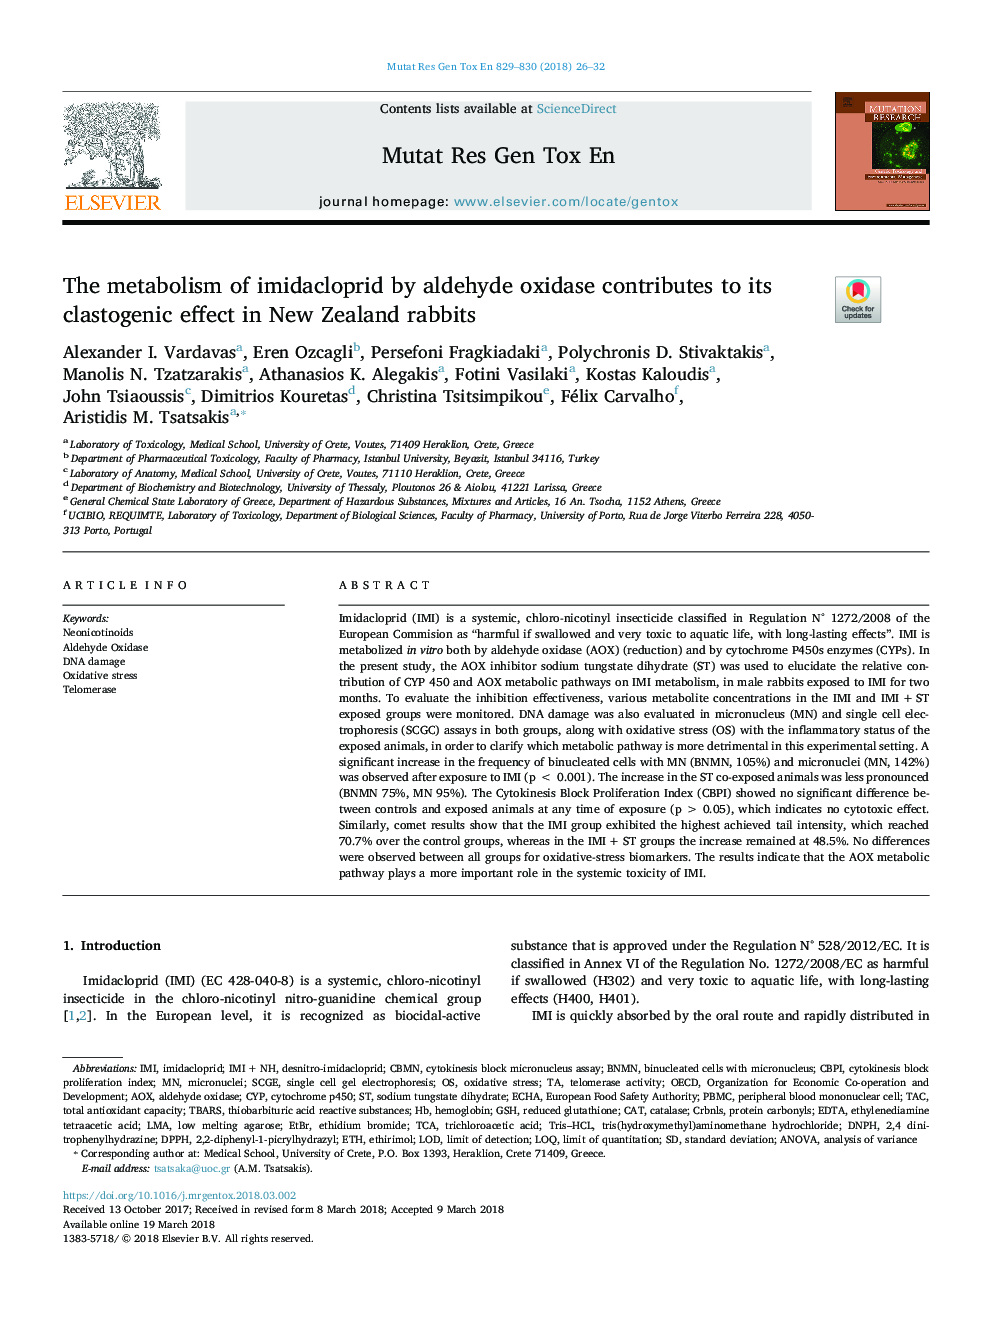 متابولیسم امیداکلوپرید توسط آلدئید اکسیداز باعث تأثیر آن در کلوادوژنز در خرگوشهای نیوزیلند می شود. 